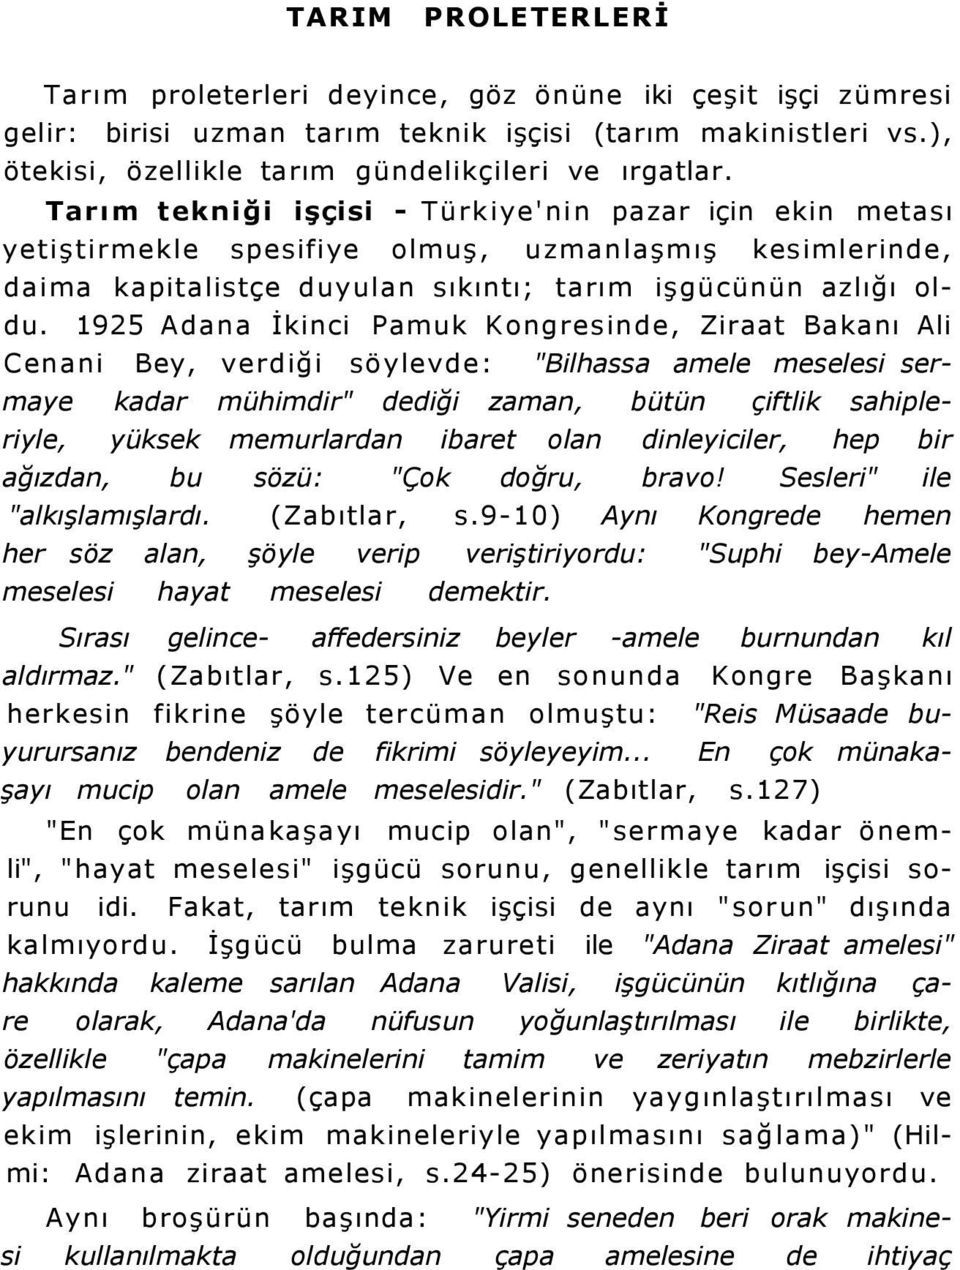 1925 Adana İkinci Pamuk Kongresinde, Ziraat Bakanı Ali Cenani Bey, verdiği söylevde: "Bilhassa amele meselesi sermaye kadar mühimdir" dediği zaman, bütün çiftlik sahipleriyle, yüksek memurlardan